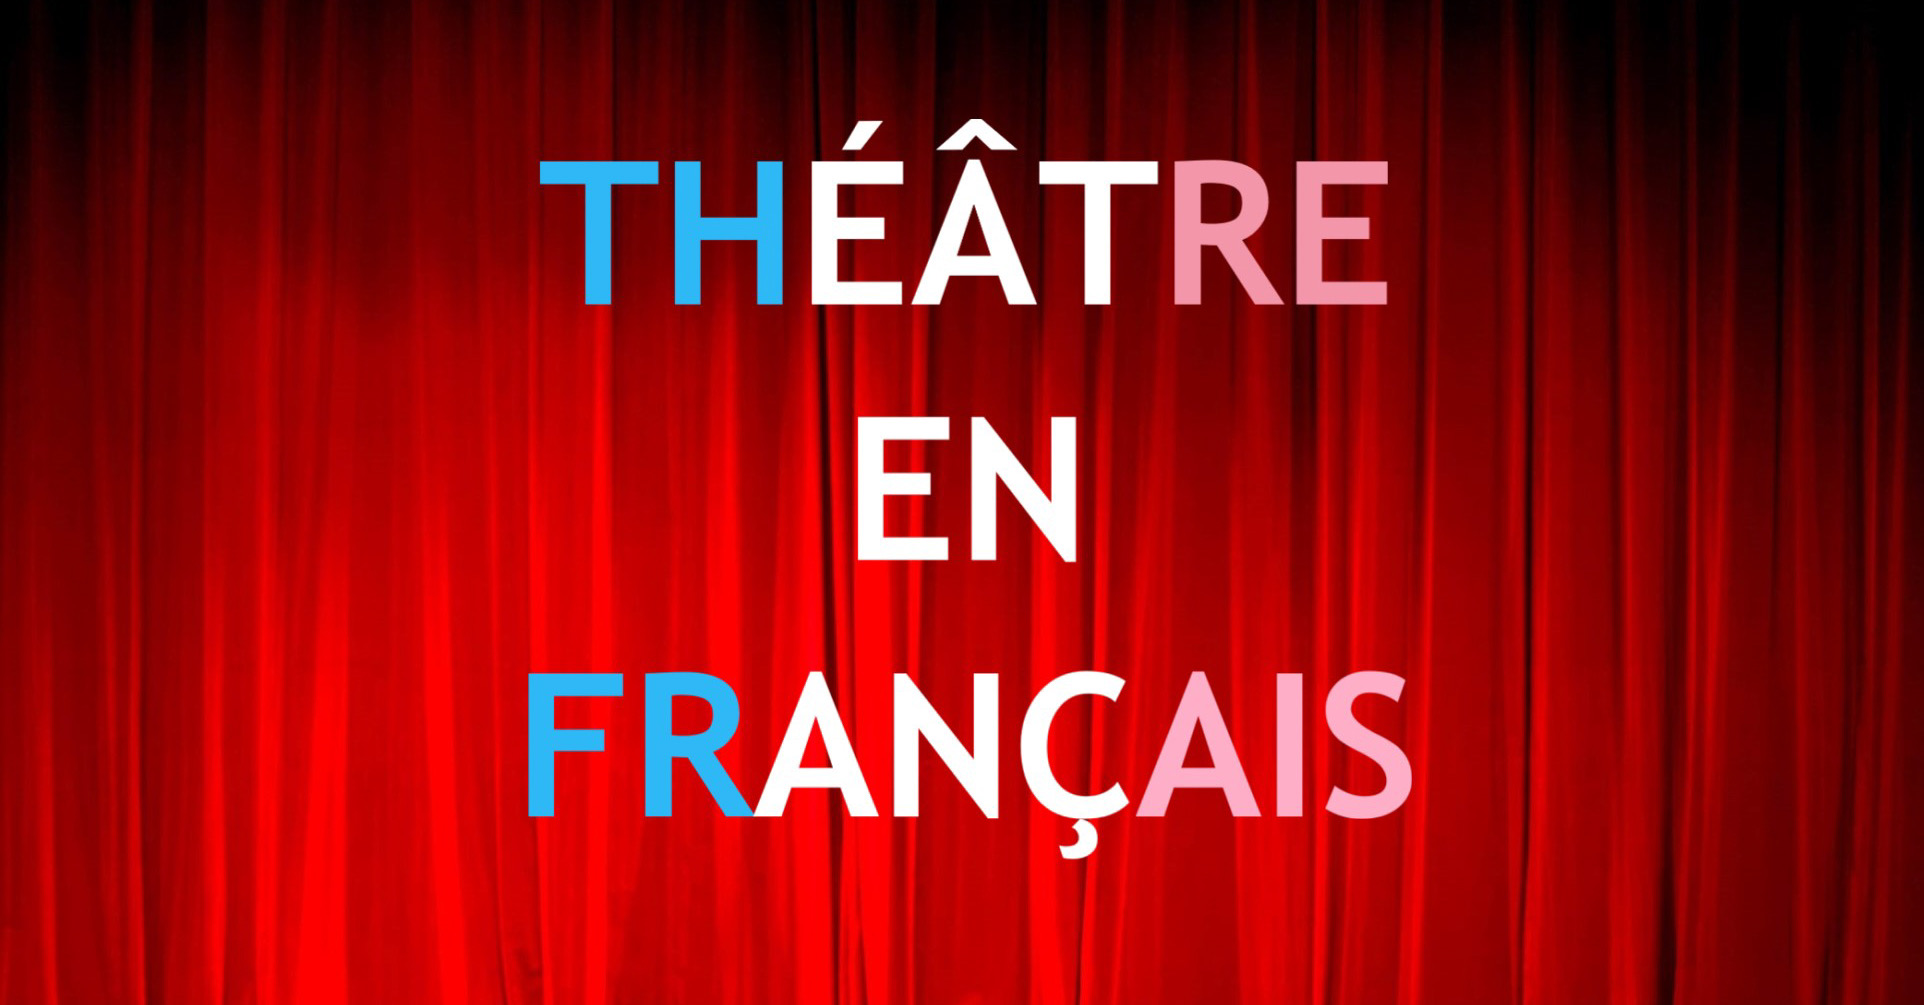 Кафедра иностранных языков приглашает студентов принять участие в театральной постановке на французском языке